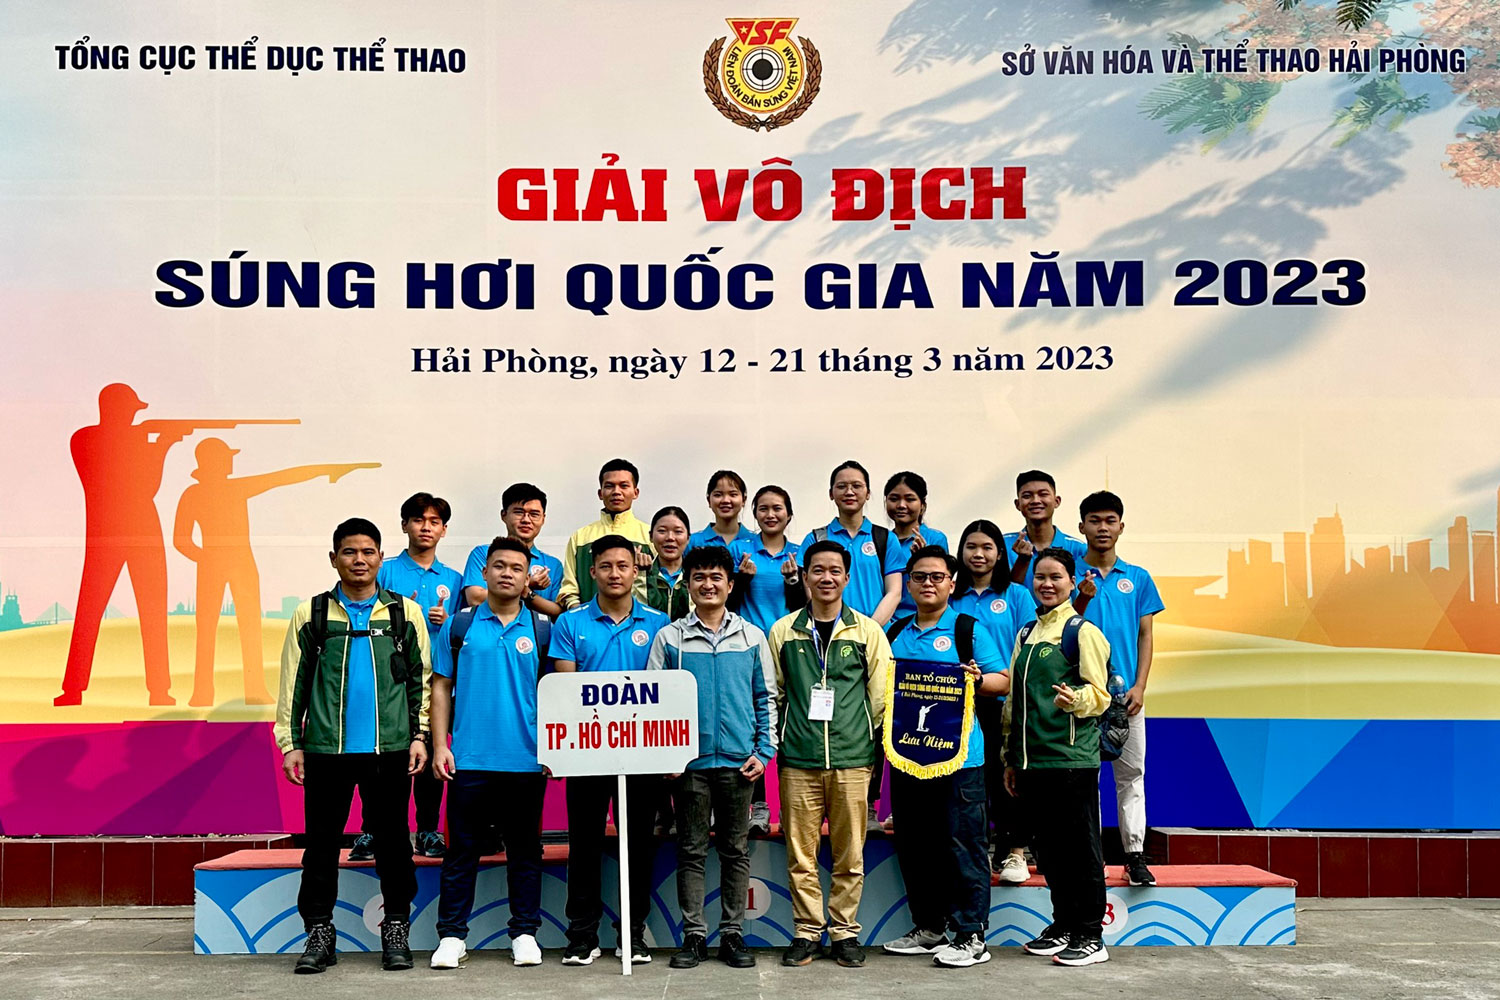 Giải vô địch súng hơi quốc gia năm 2023 - Thành phố Hồ Chí Minh hạng nhì toàn đoàn